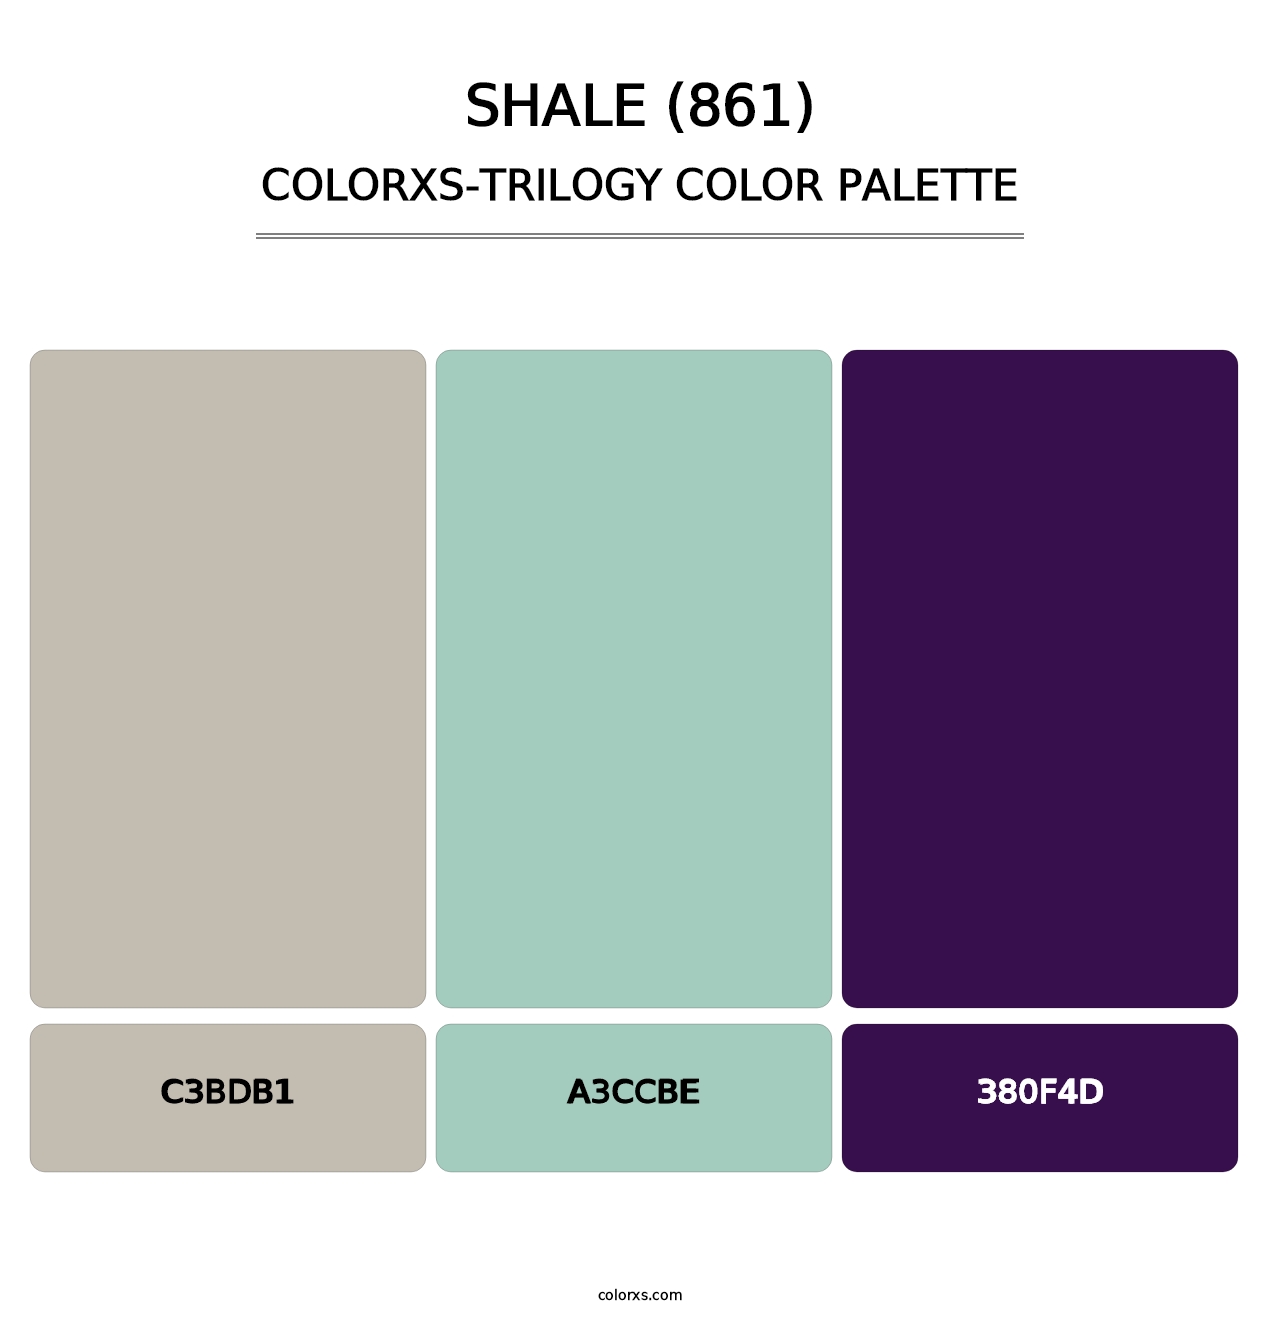 Shale (861) - Colorxs Trilogy Palette